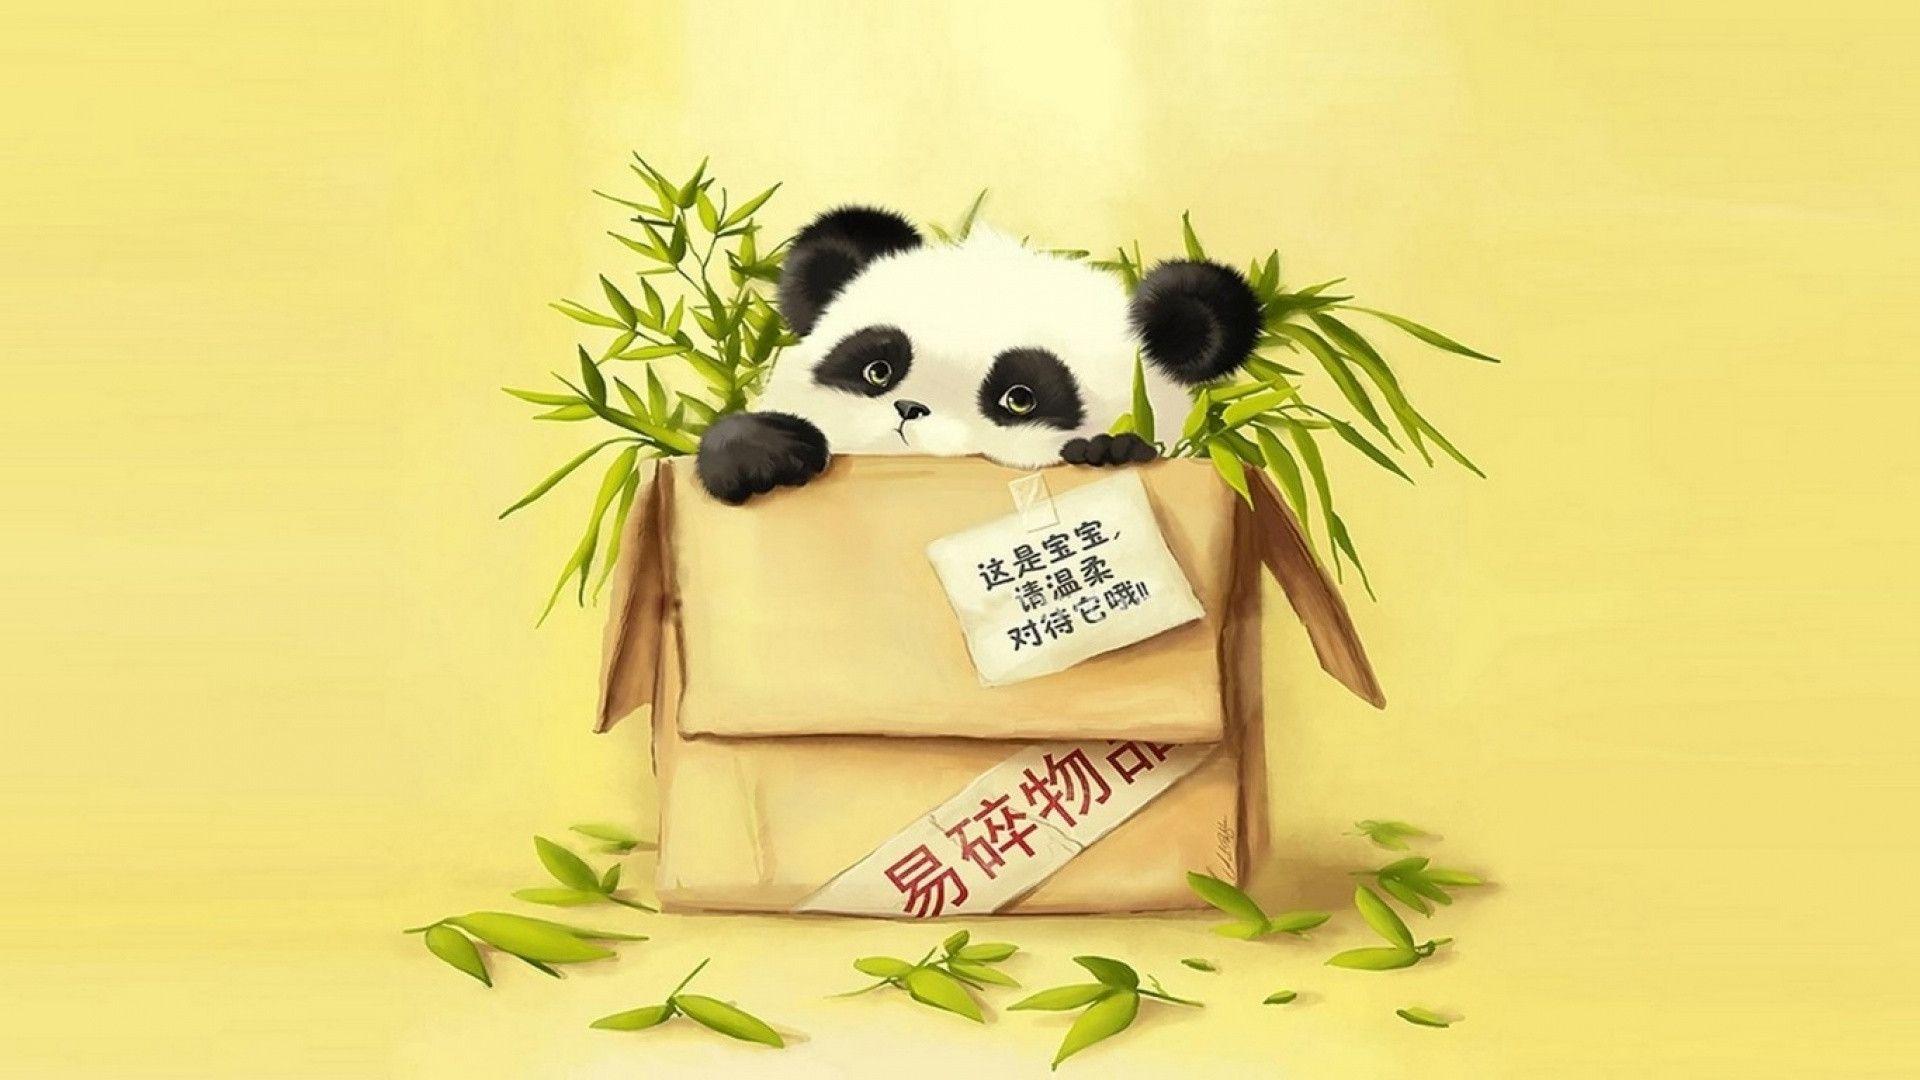 Cute Cartoon Panda Wallpapers